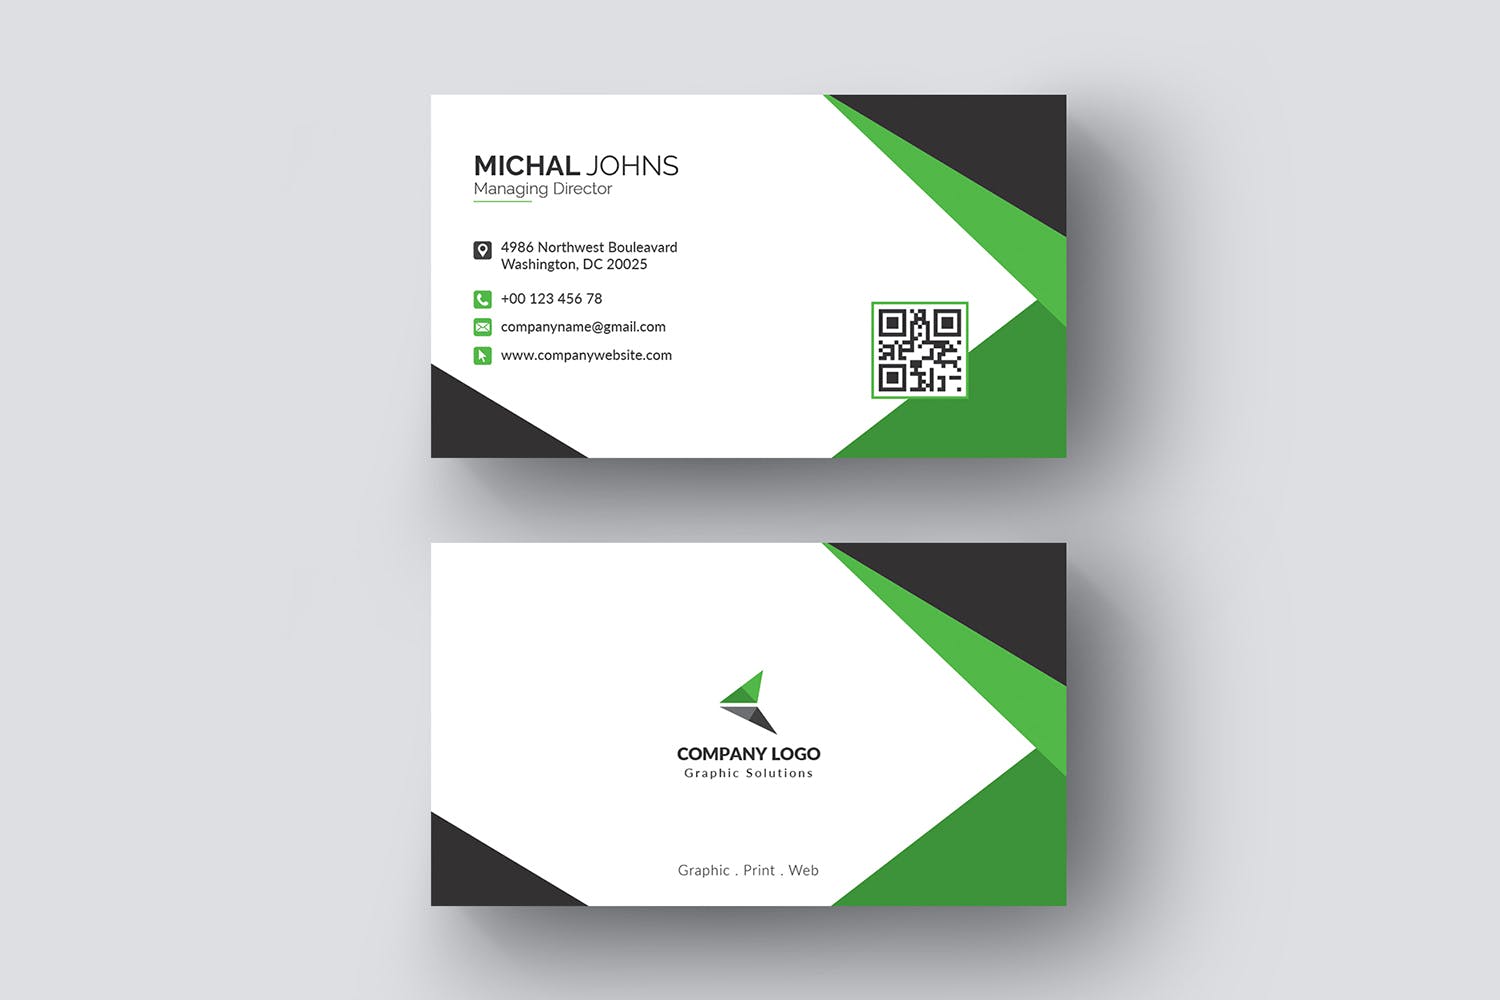 现代创意设计风格企业名片模板 Business Card插图(2)